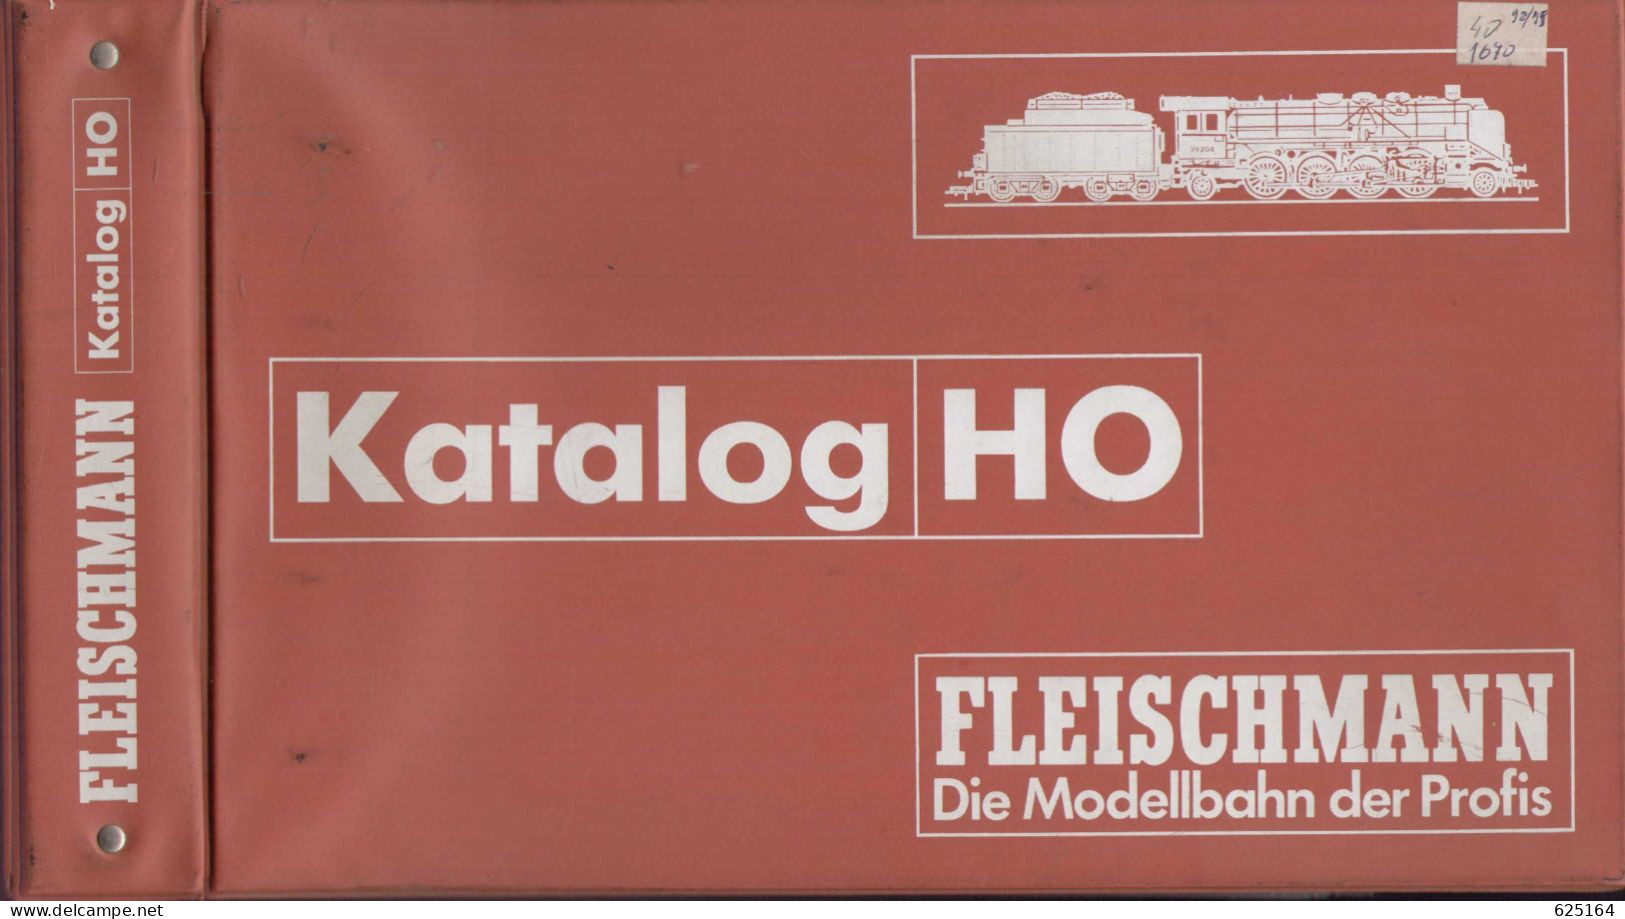 Catalogue FLEISCHMANN 1998/99 Händlerkatalog HO Die Modellbahn Der Profis Mit Original Ordner - Deutsch